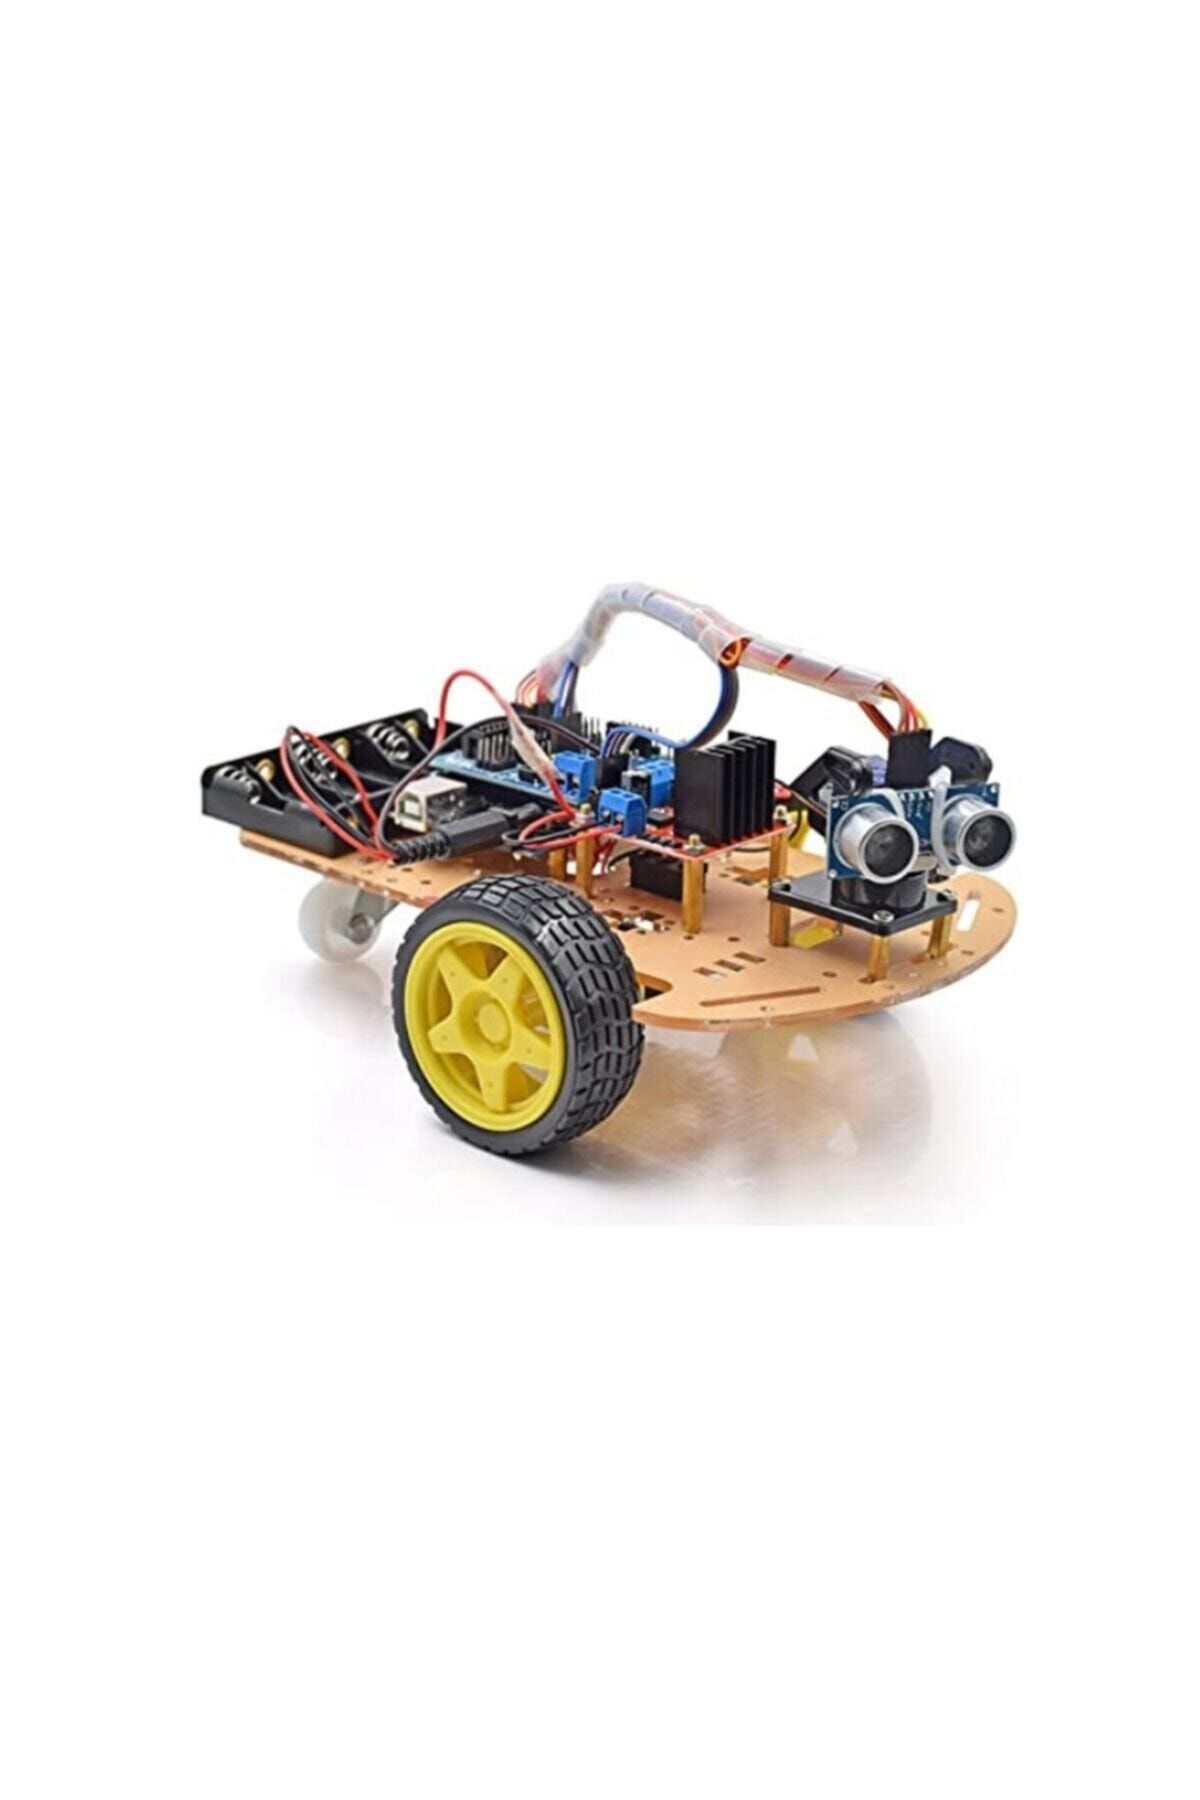 Arduino Emes Robotik Engelden Kaçan 2wd Robot Araba Kiti C1